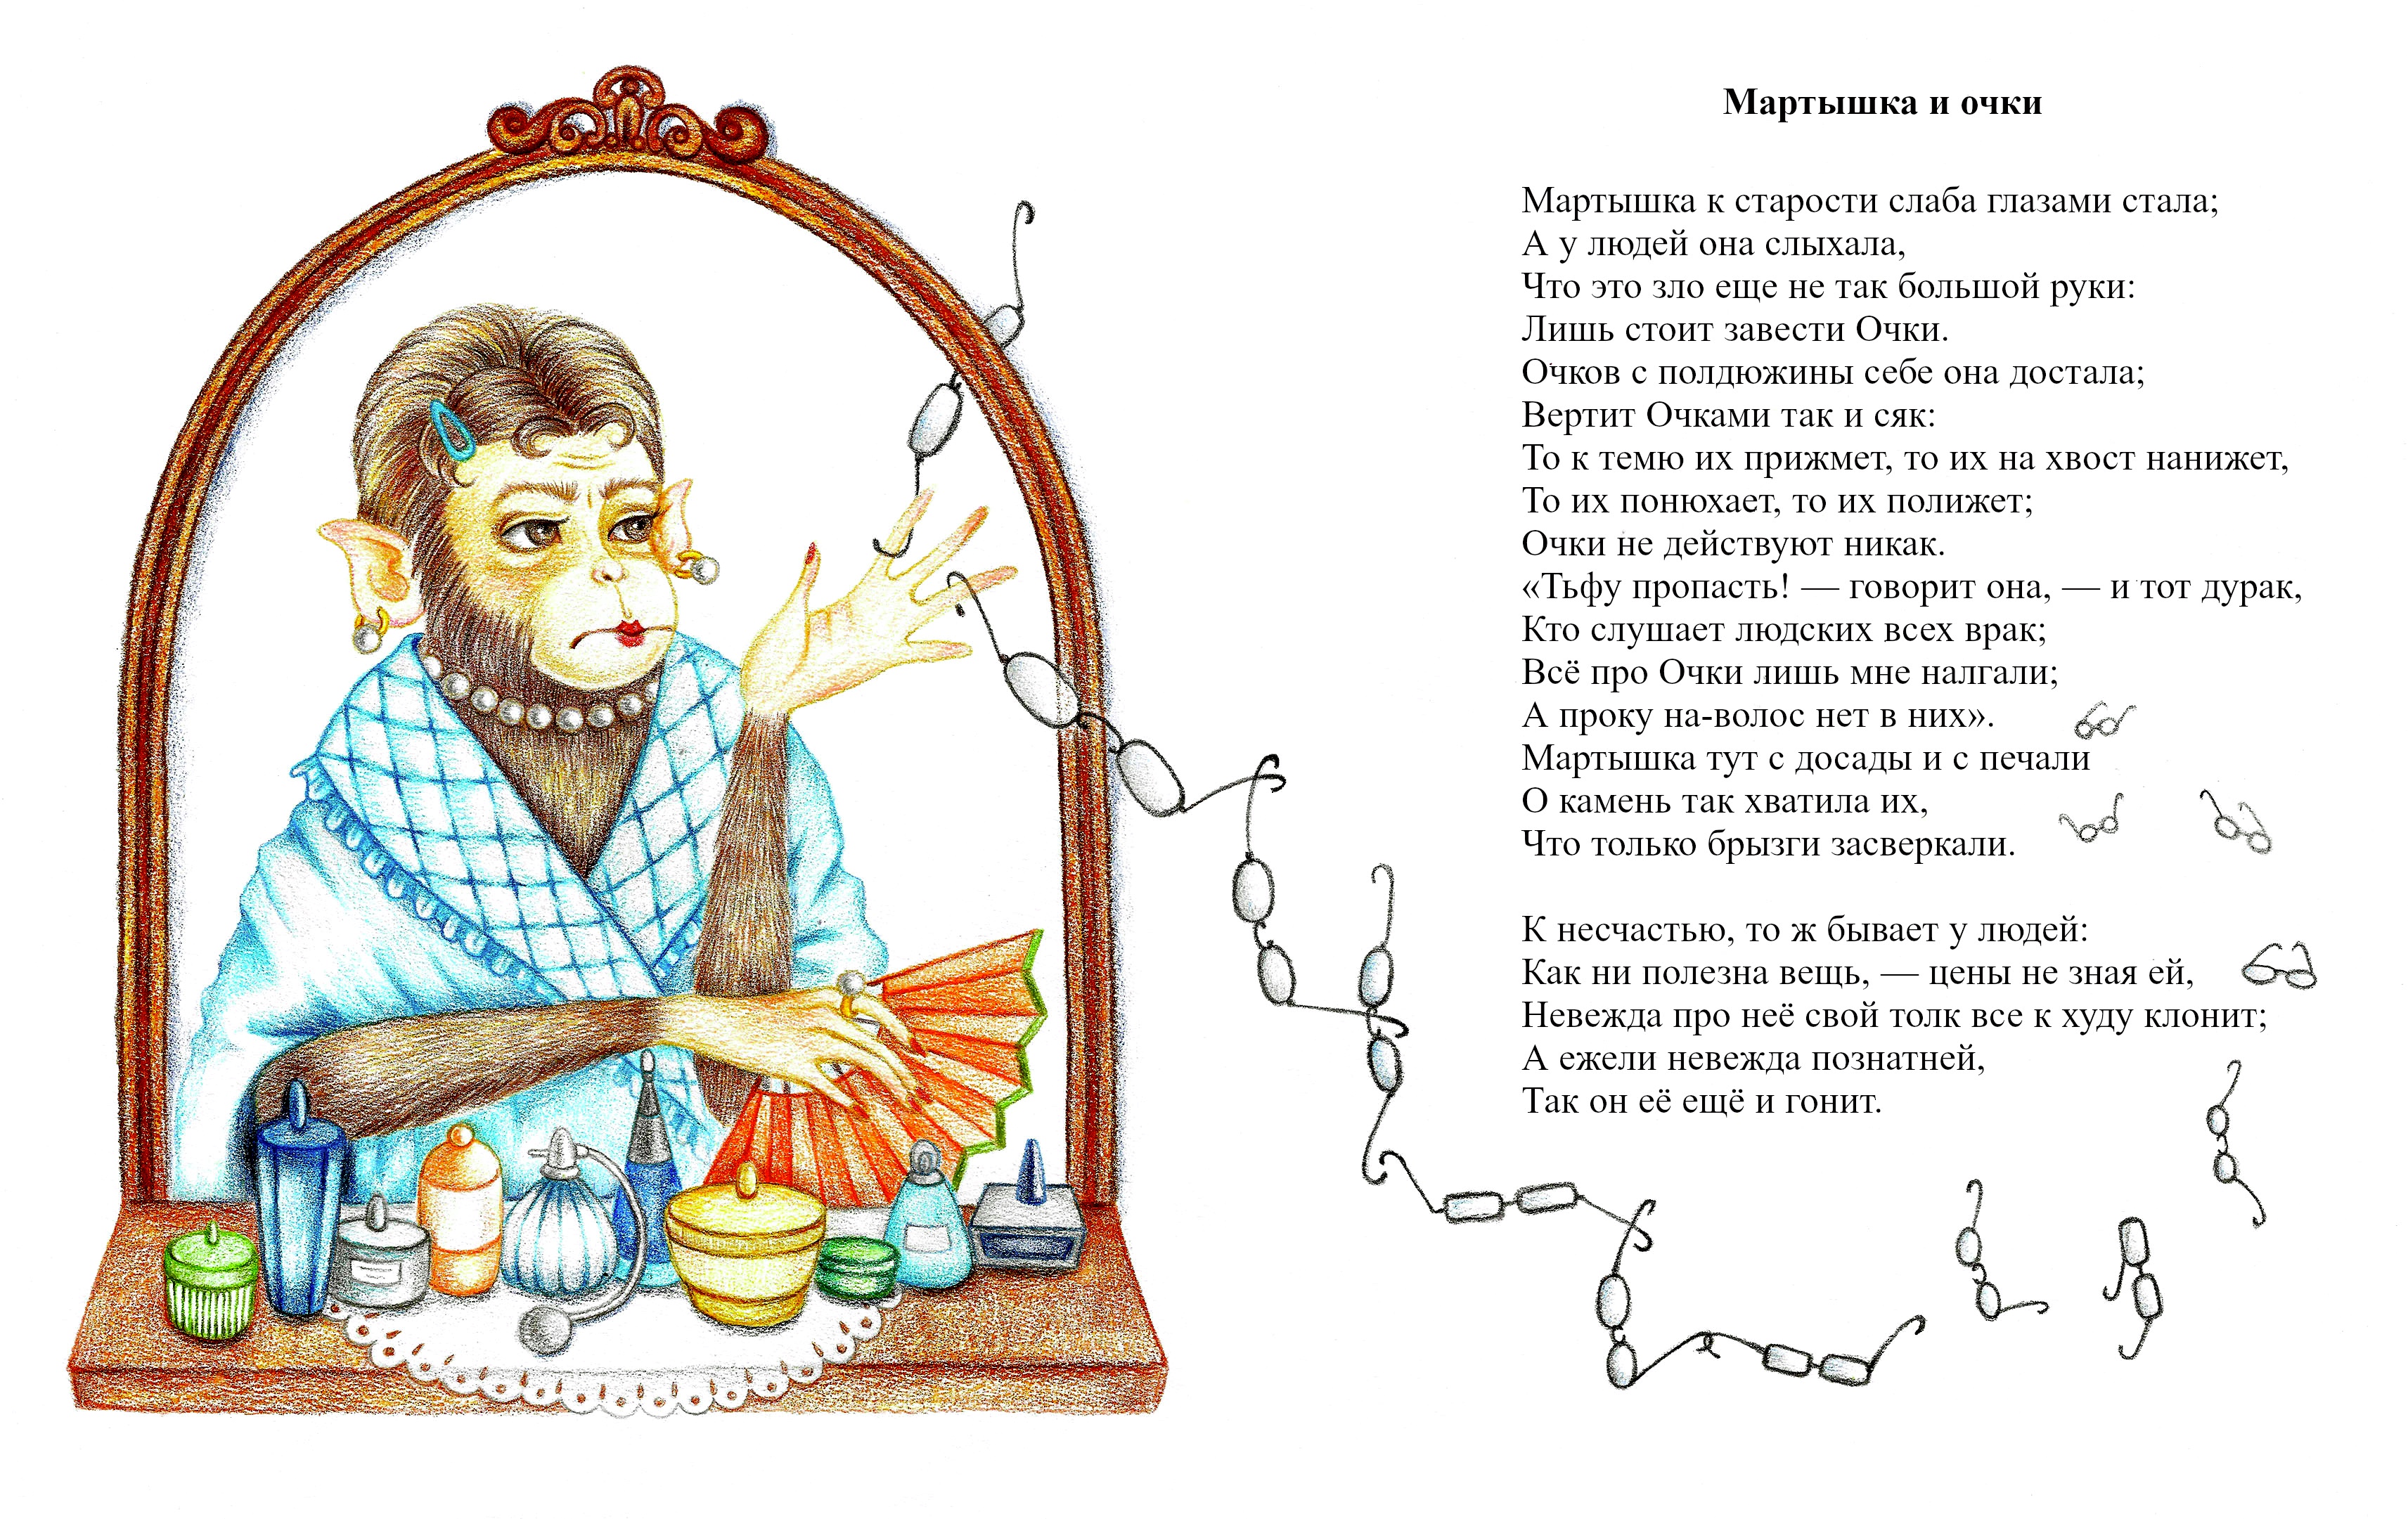 Иллюстрация к басне мартышка и очки